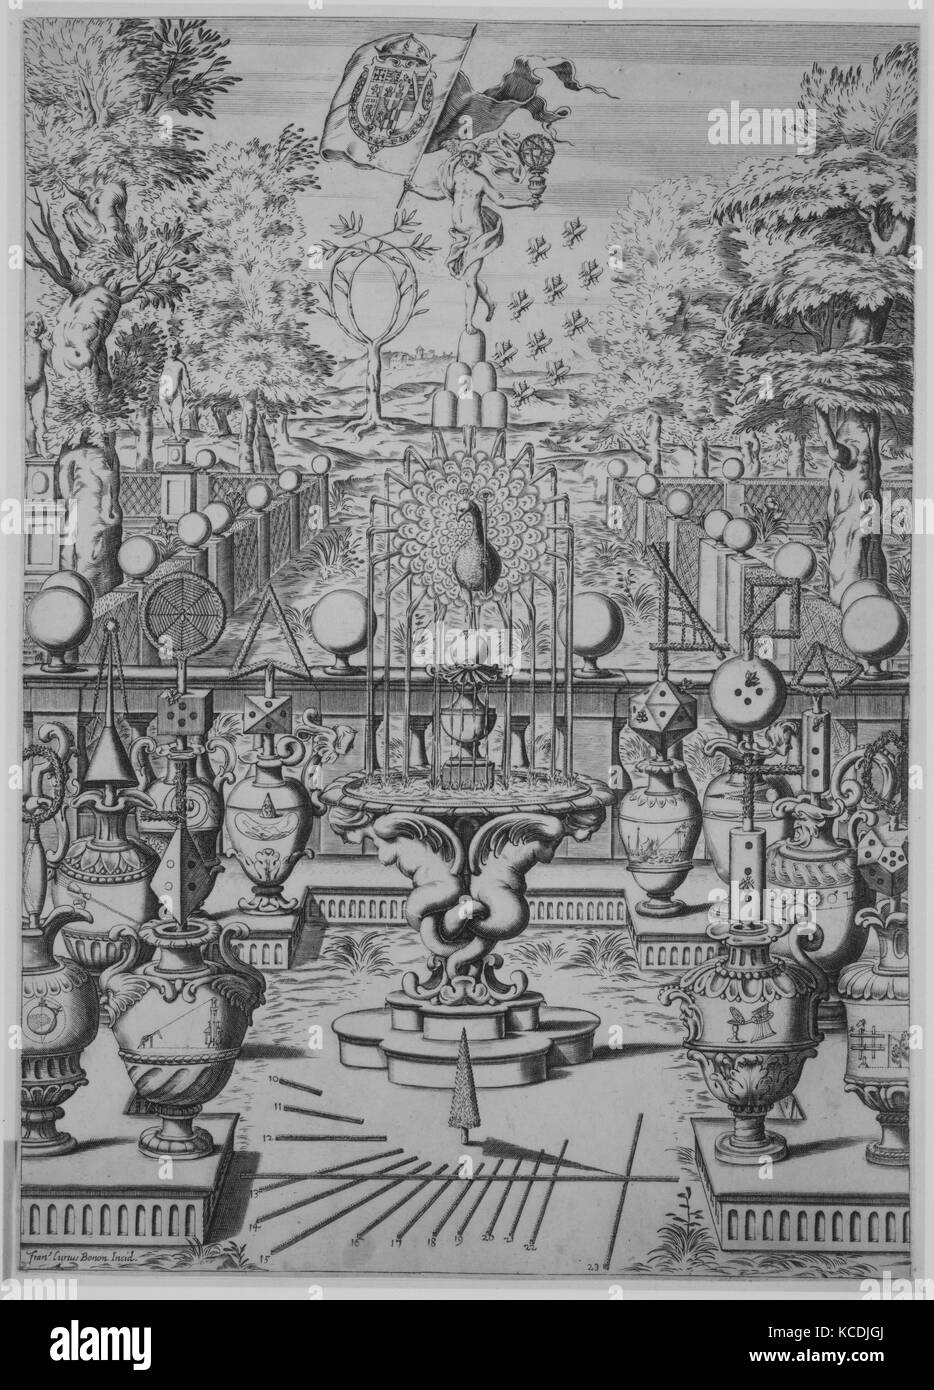 Garden of Mathematical Sciences, Francesco Curti, 17th century Stock Photo